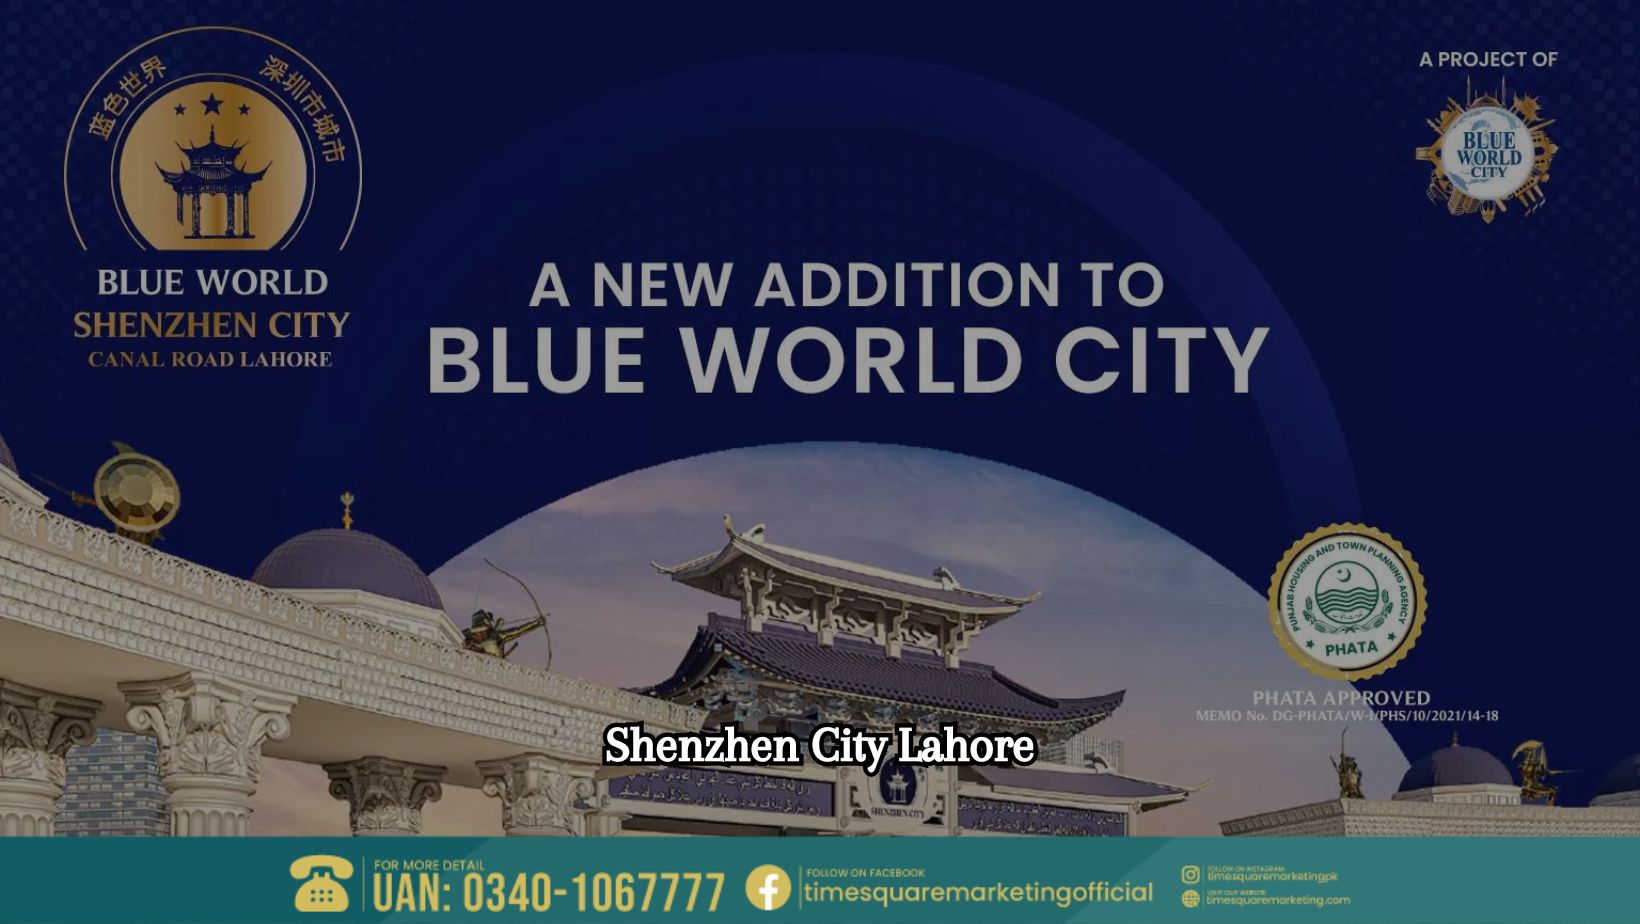 Shenzhen City Lahore